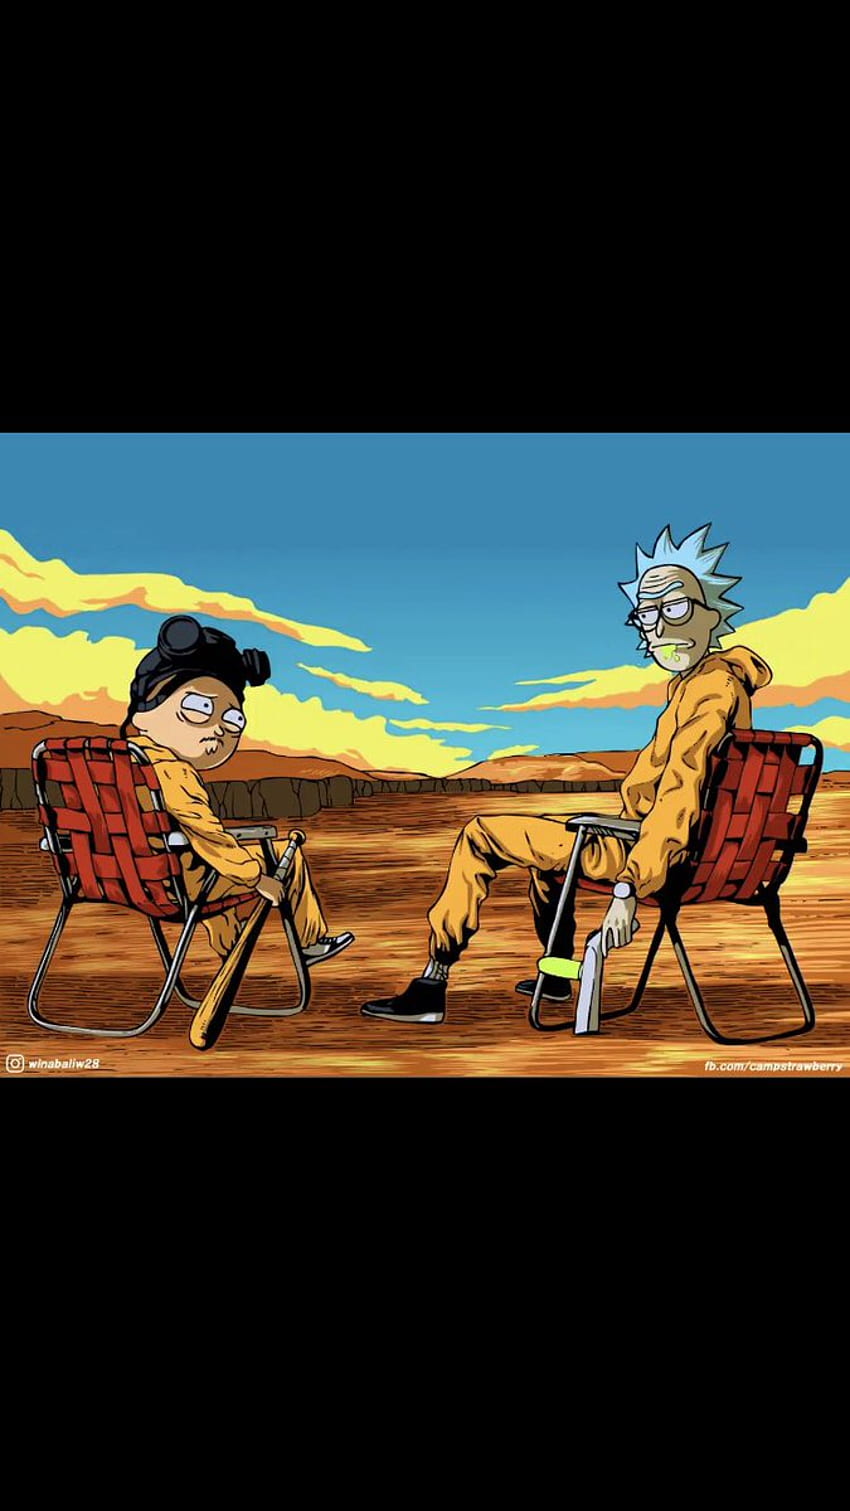 Rick and Morty: dos trajes trampa explosivos frescos, nunca congelados. Mira un nuevo episodio de los domingos de fondo de pantalla del teléfono